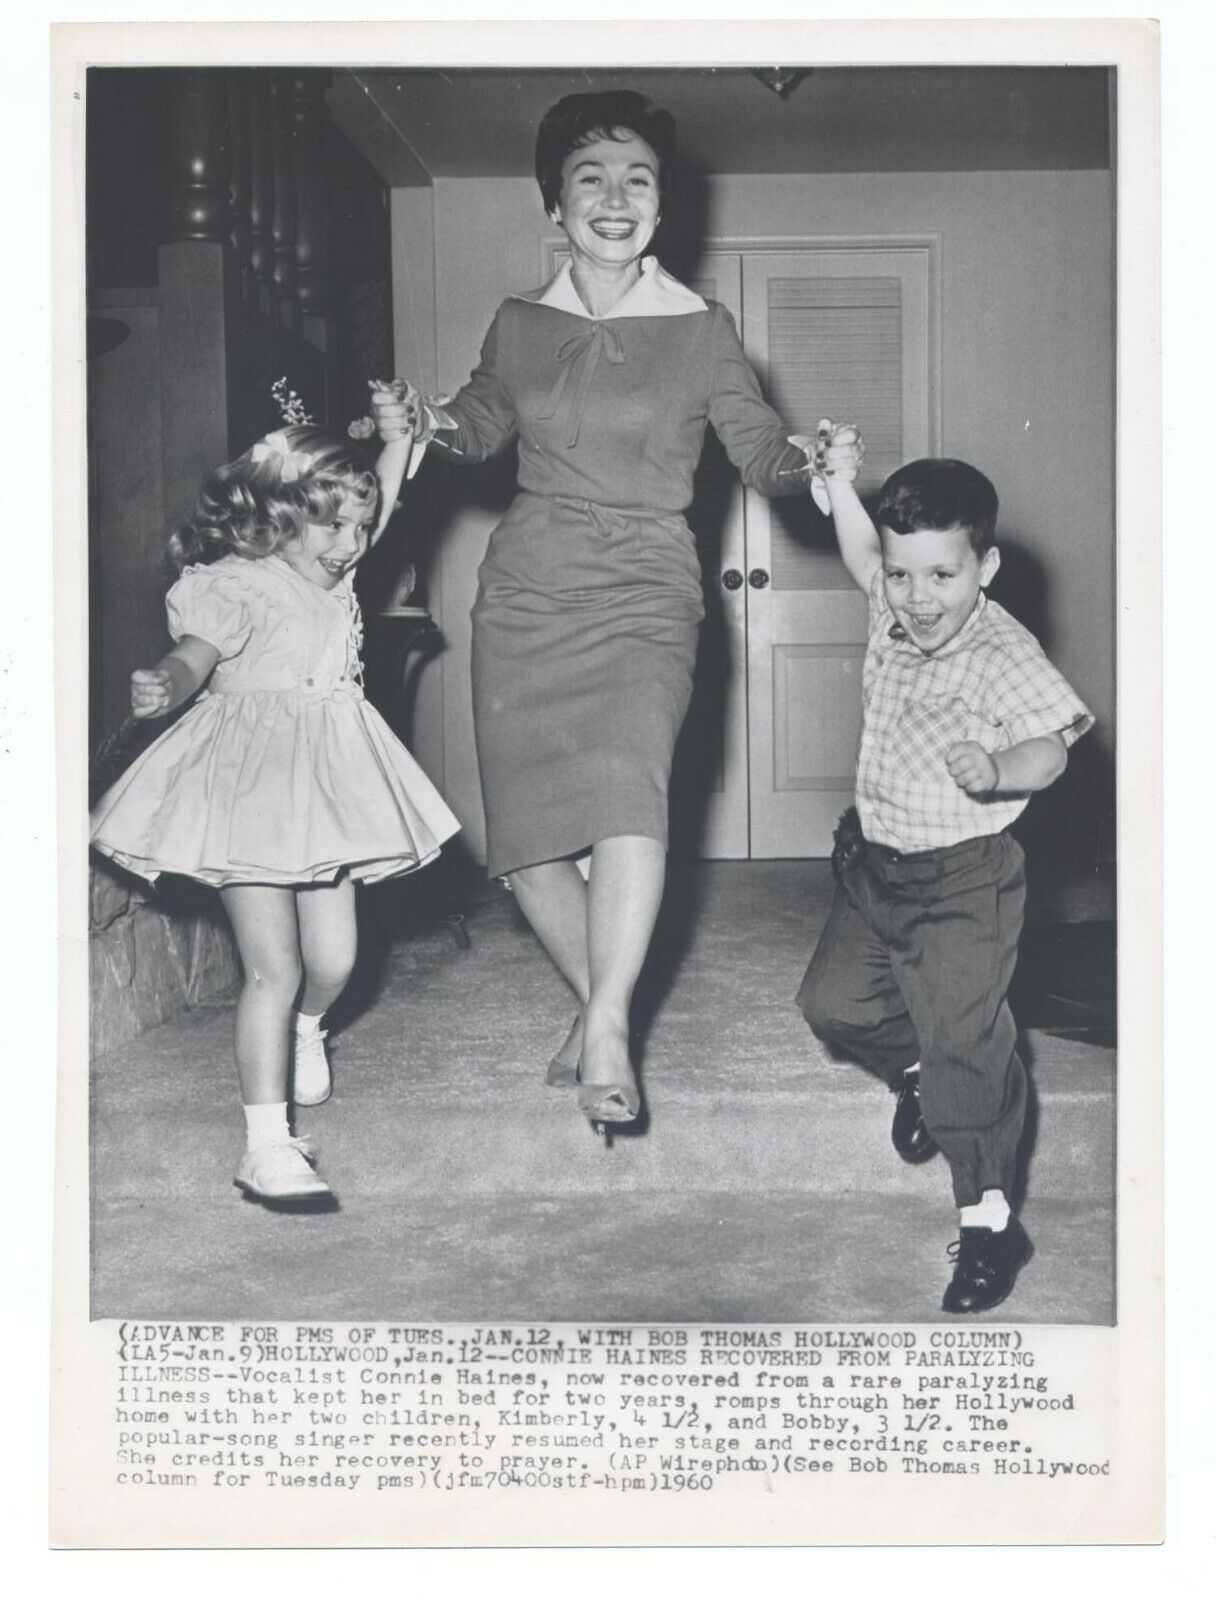 1960 Connie Haines Original Home Candid 7.25x10 Able To Walk Again